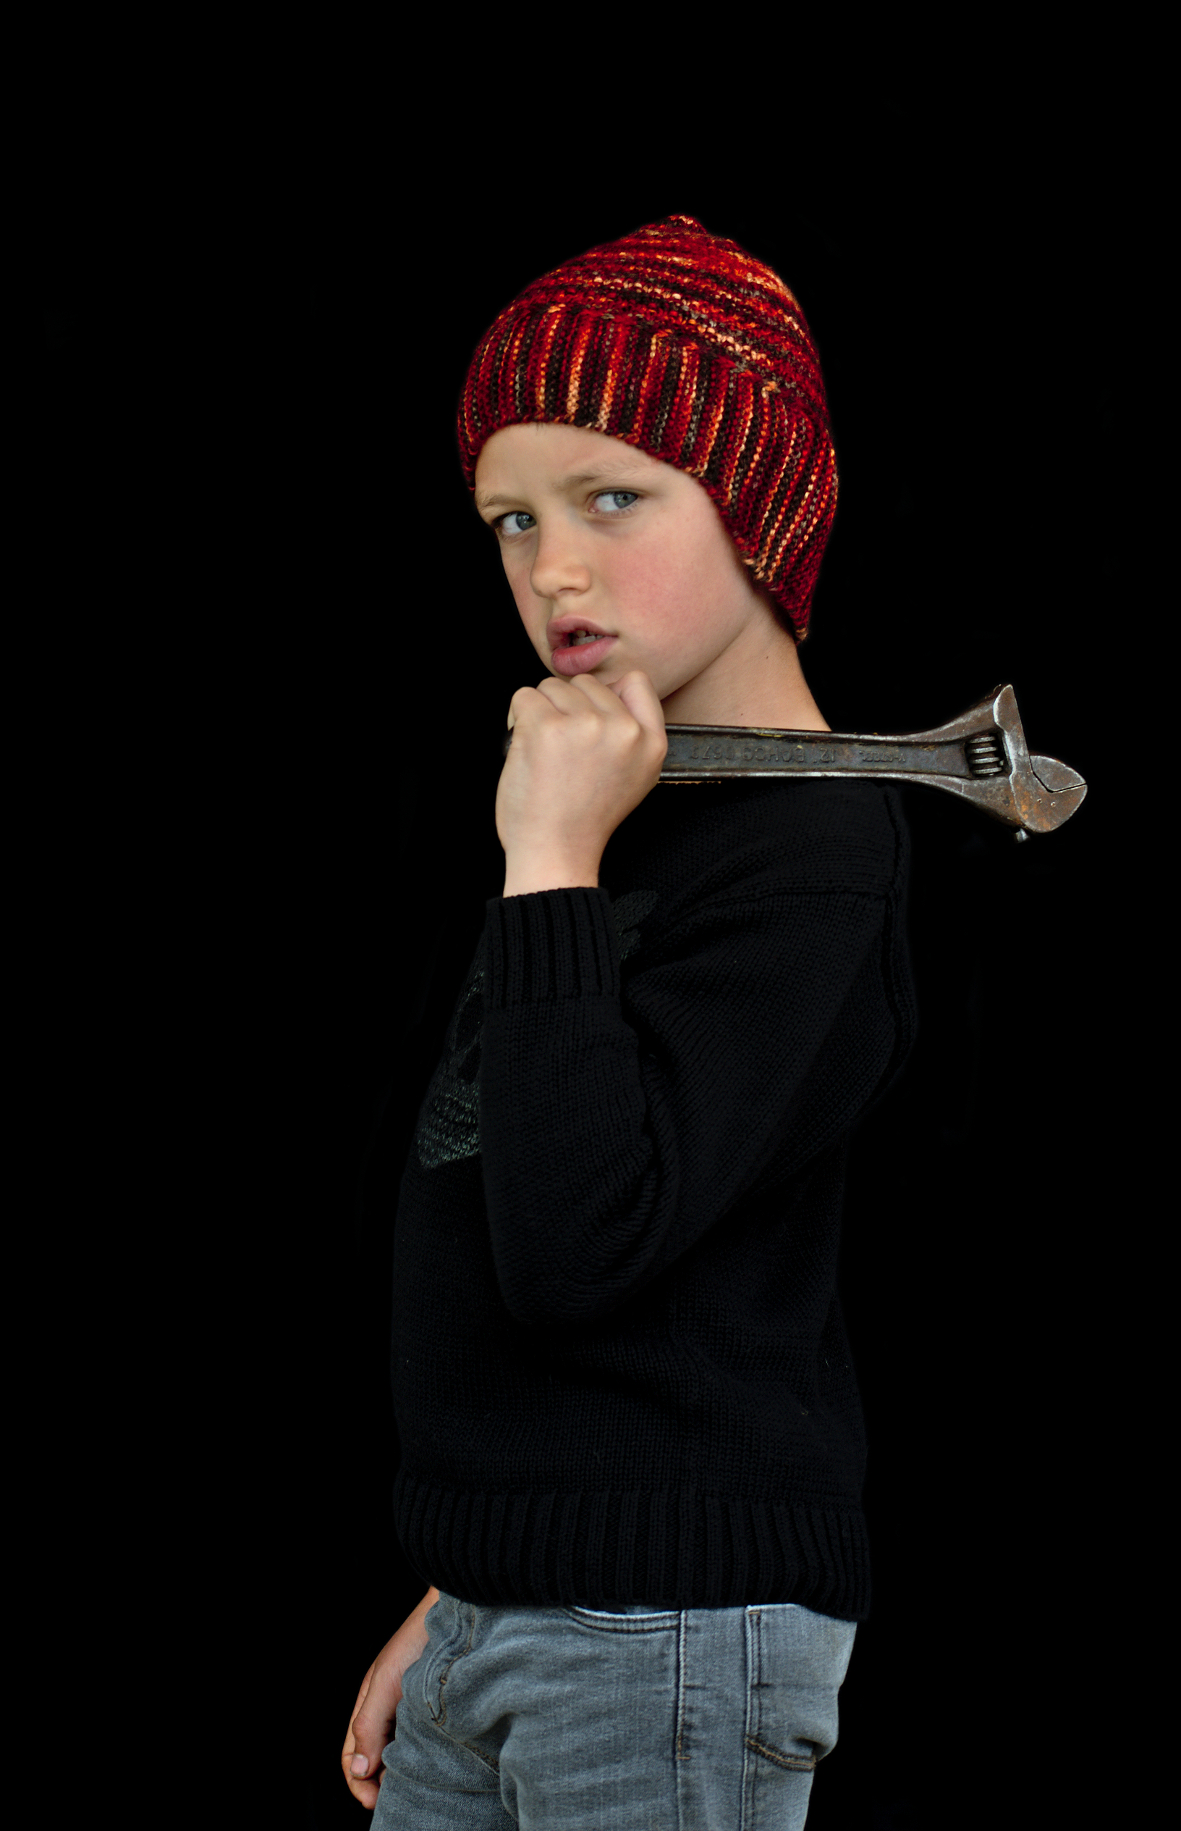 Swinton pixie helmet Hat hand knitting pattern for DK yarn